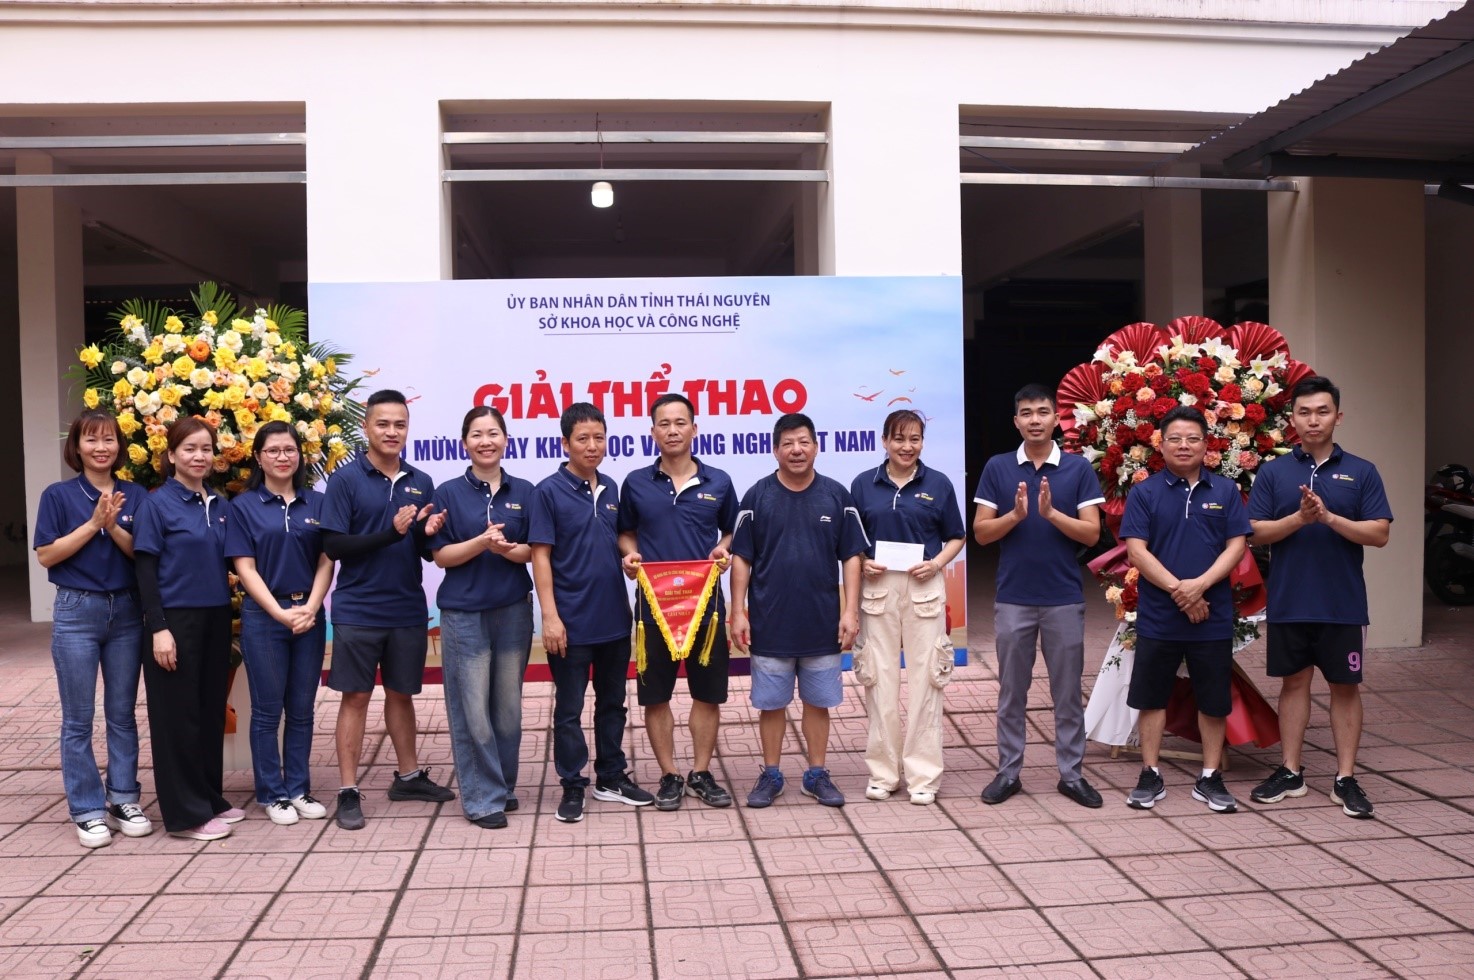 Giải thể thao chào mừng Ngày Khoa học và Công nghệ Việt Nam 18-5 -5